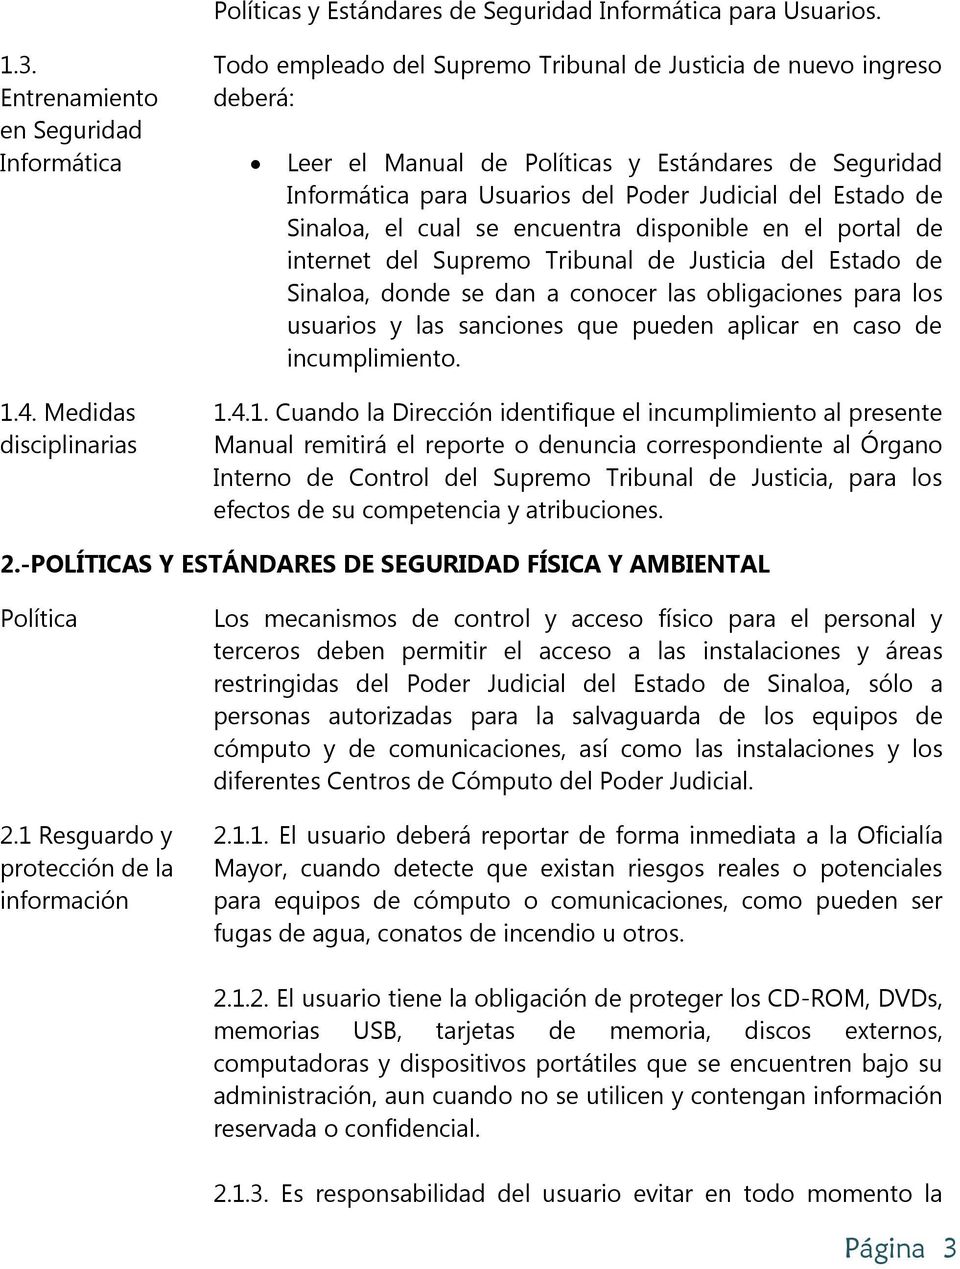 Estado de Sinaloa, el cual se encuentra disponible en el portal de internet del Supremo Tribunal de Justicia del Estado de Sinaloa, donde se dan a conocer las obligaciones para los usuarios y las